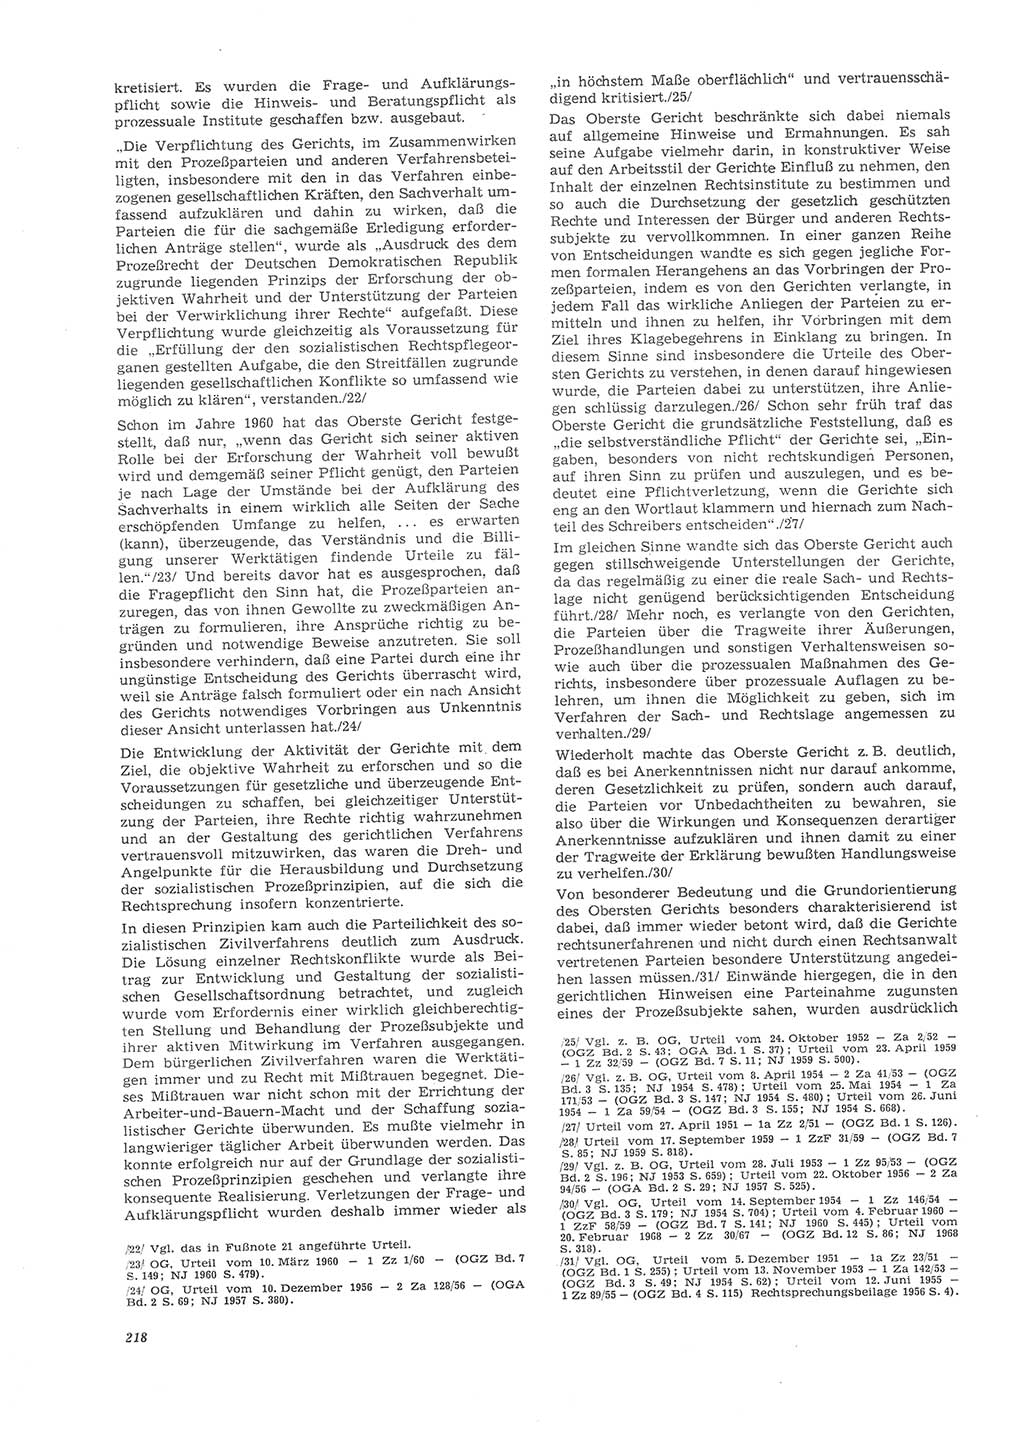 Neue Justiz (NJ), Zeitschrift für Recht und Rechtswissenschaft [Deutsche Demokratische Republik (DDR)], 26. Jahrgang 1972, Seite 218 (NJ DDR 1972, S. 218)